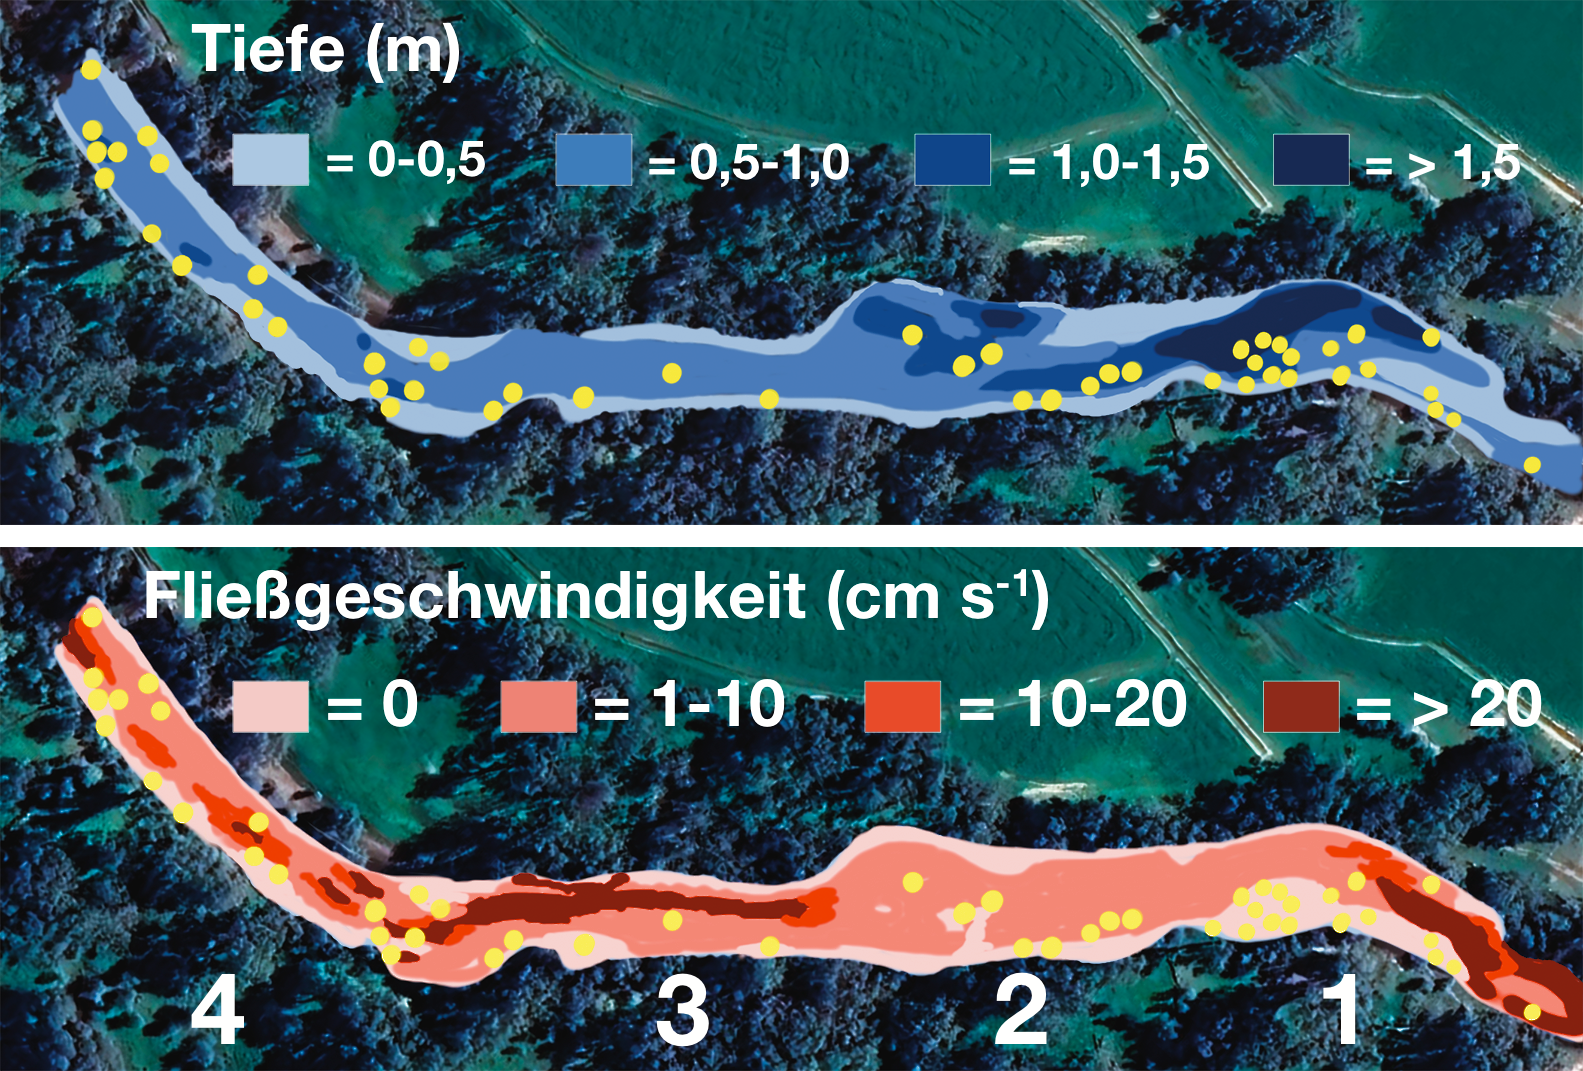 Karpfenangeln am Fluss - Standorte nach Tiefe und Fließgeschwindigkeit